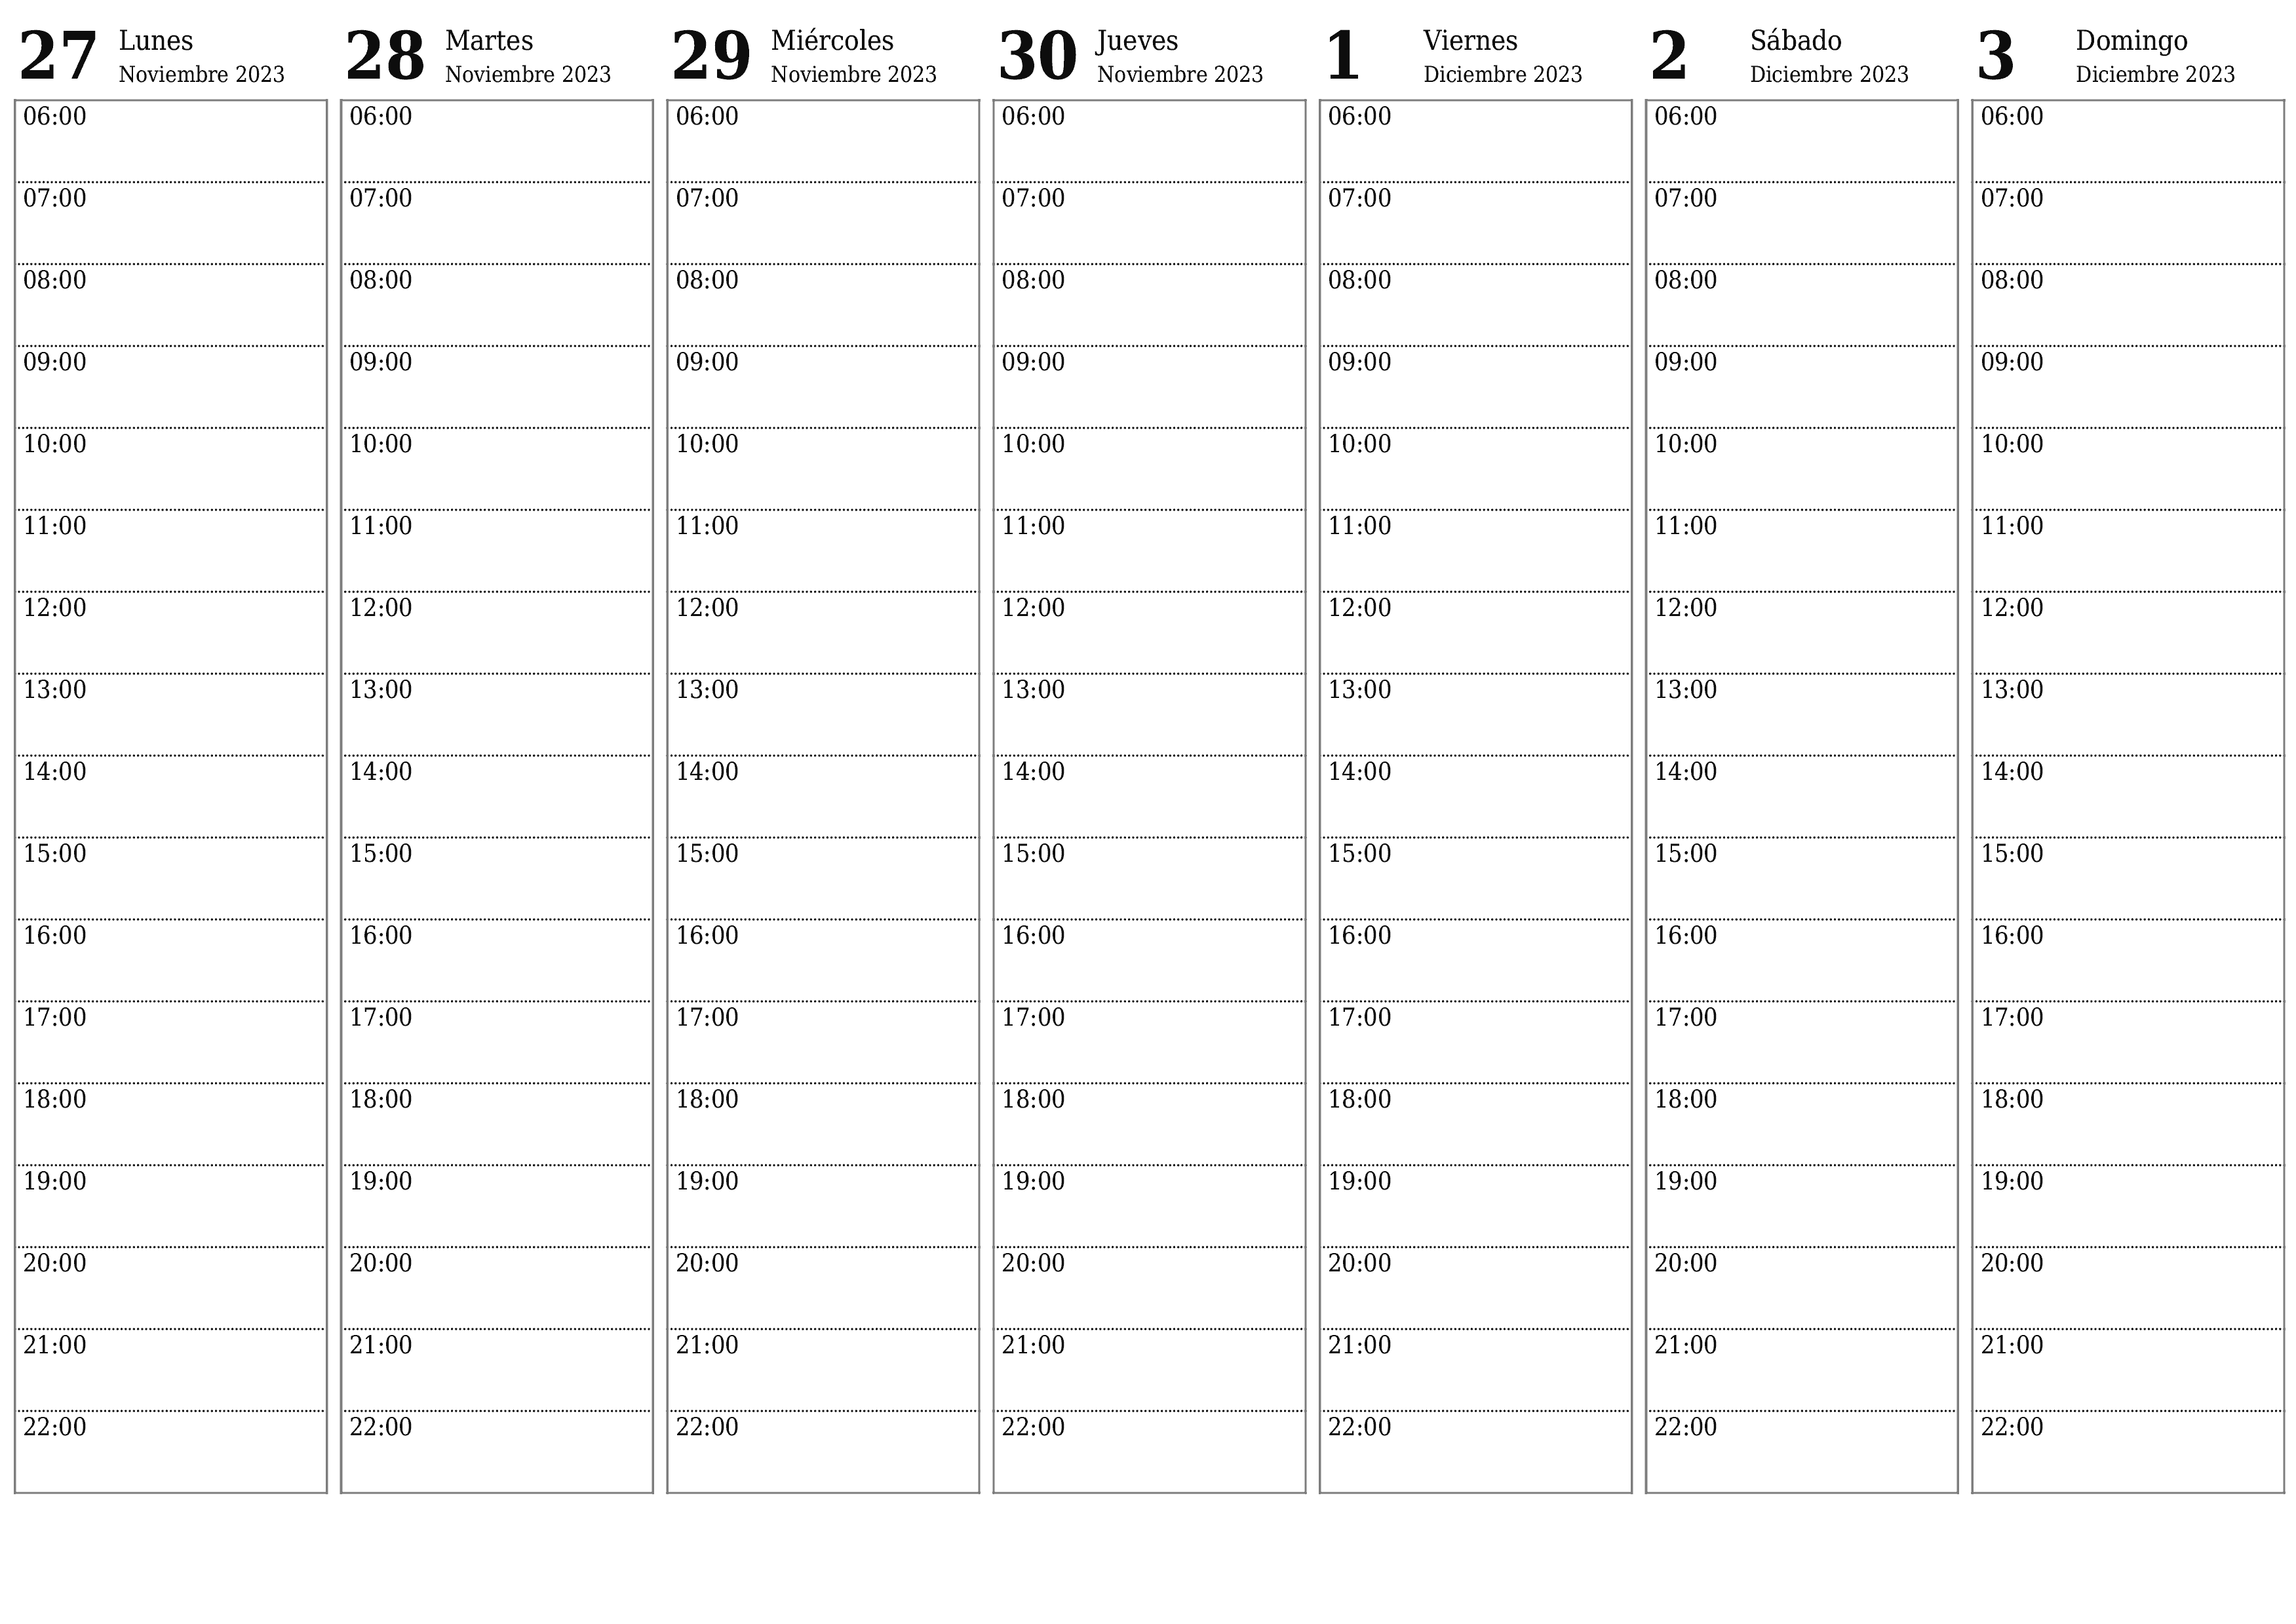  imprimible de pared plantilla de gratishorizontal Semanal planificador calendario Diciembre (Dic) 2023